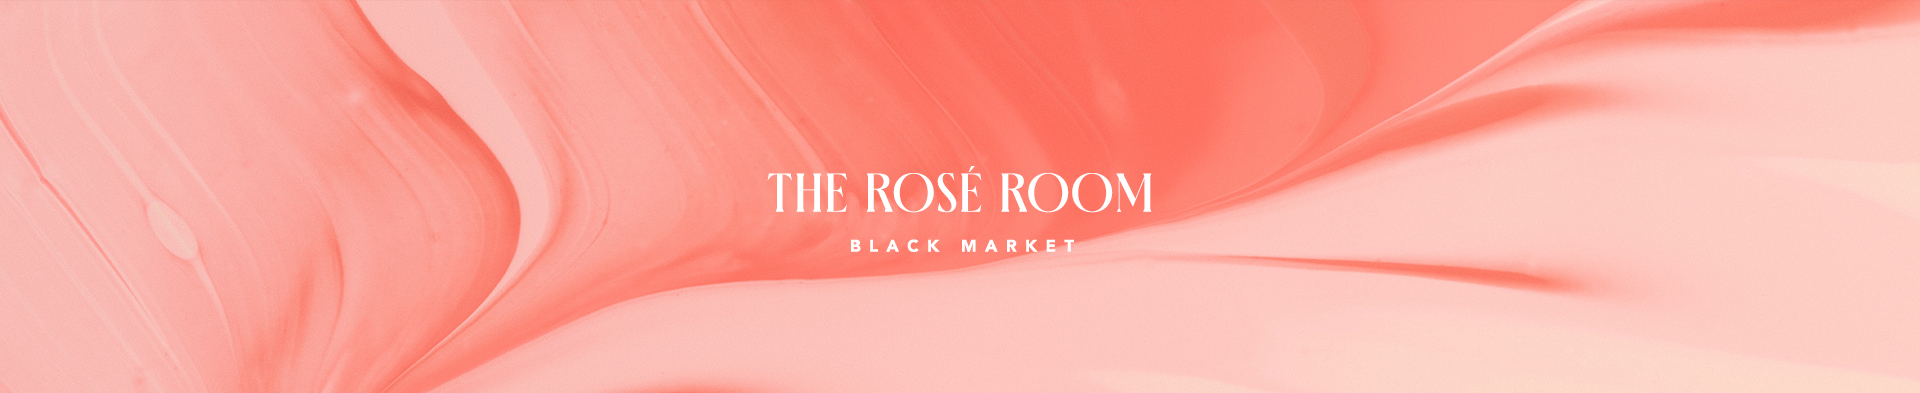 Rosé Room Banner